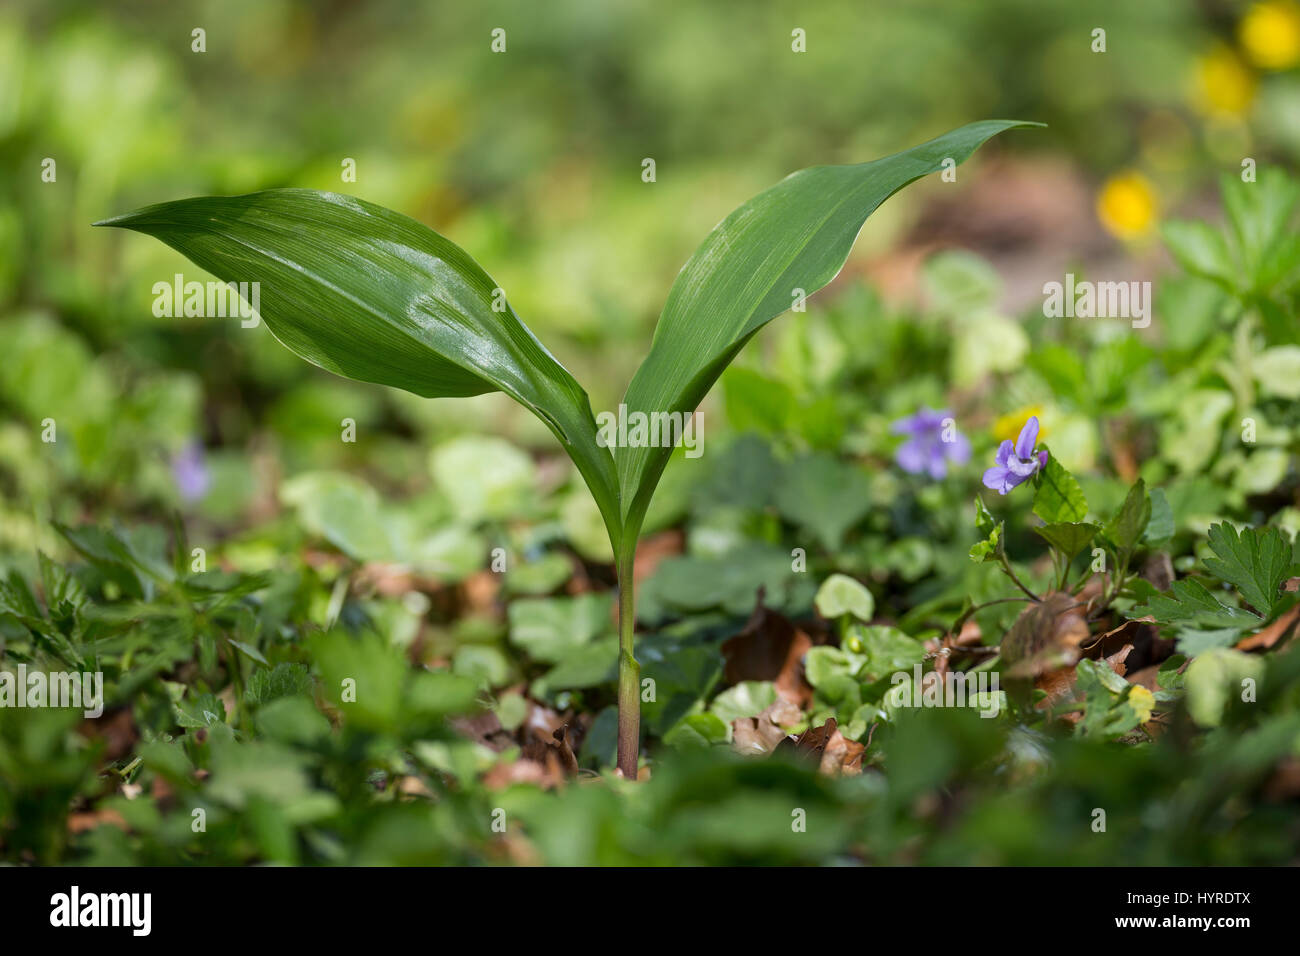 Gewöhnliches Maiglöckchen, frische Blätter vor der Blüte, Mai-Glöckchen, Convallaria majalis, Life-of-the-Valley, Muguet Stock Photo